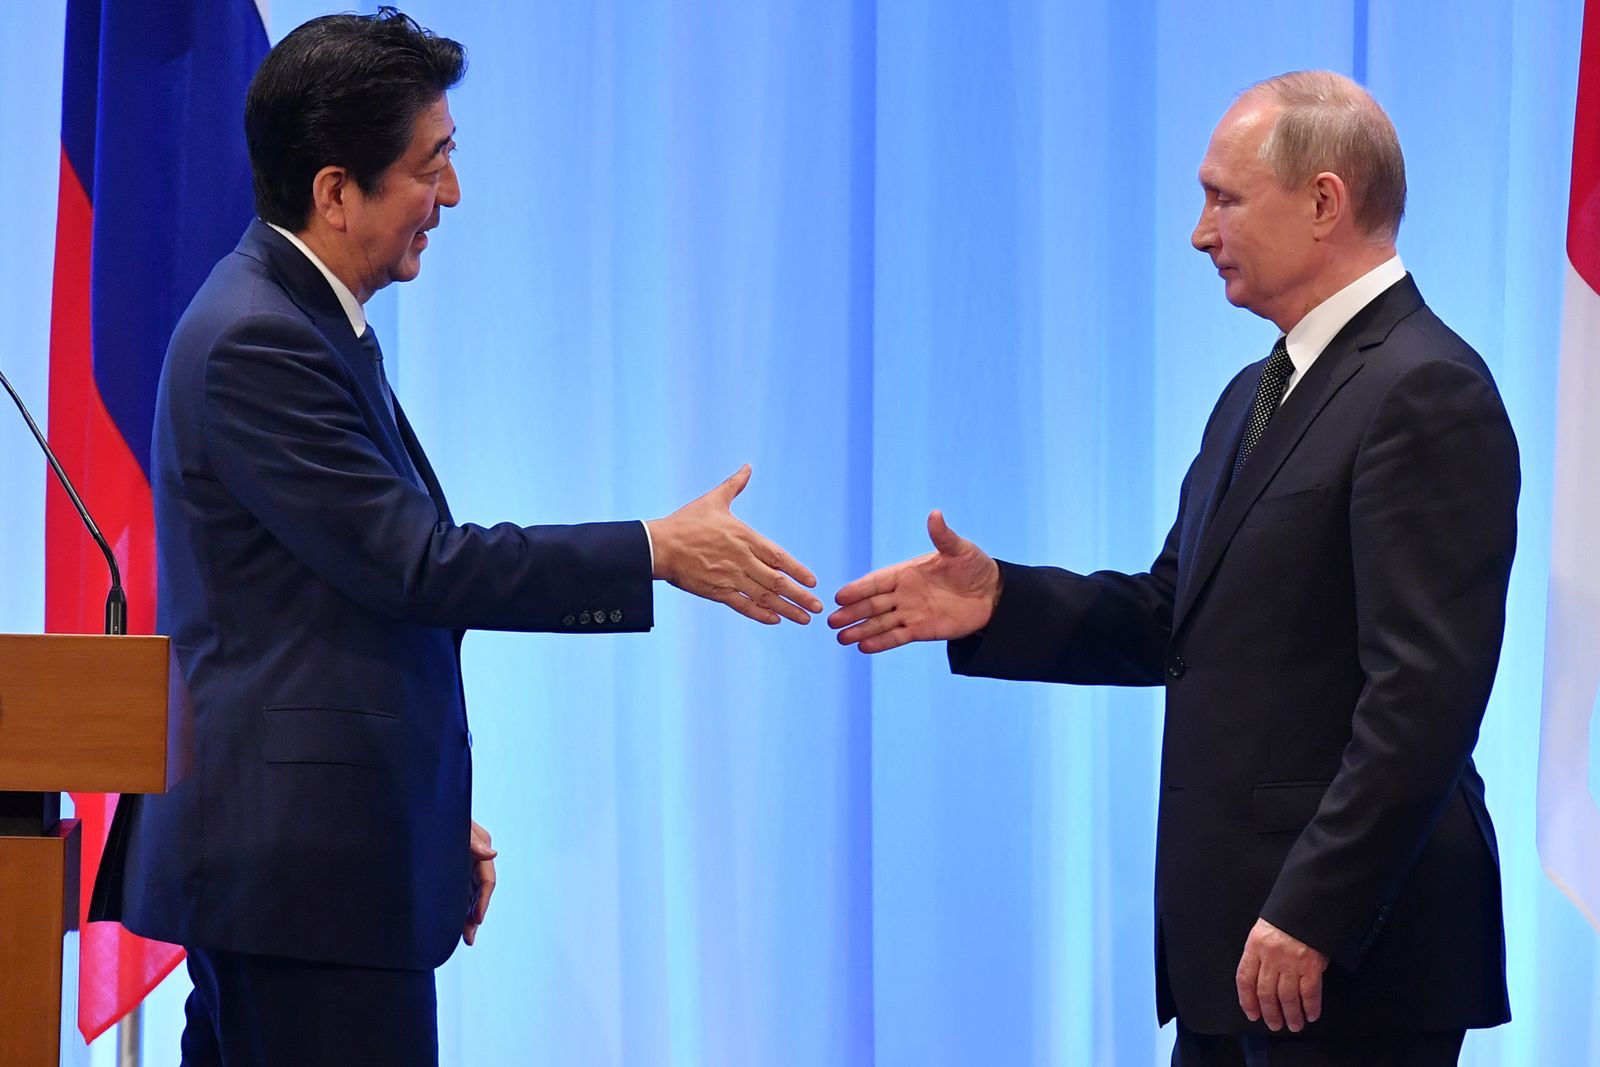 الرئيس الروسي فلاديمير بوتين ورئيس الوزراء الياباني السابق شينزو آبي يتصافحان بعد قمة لمجموعة العشرين في أوساكا - 29 يونيو 2019 - REUTERS